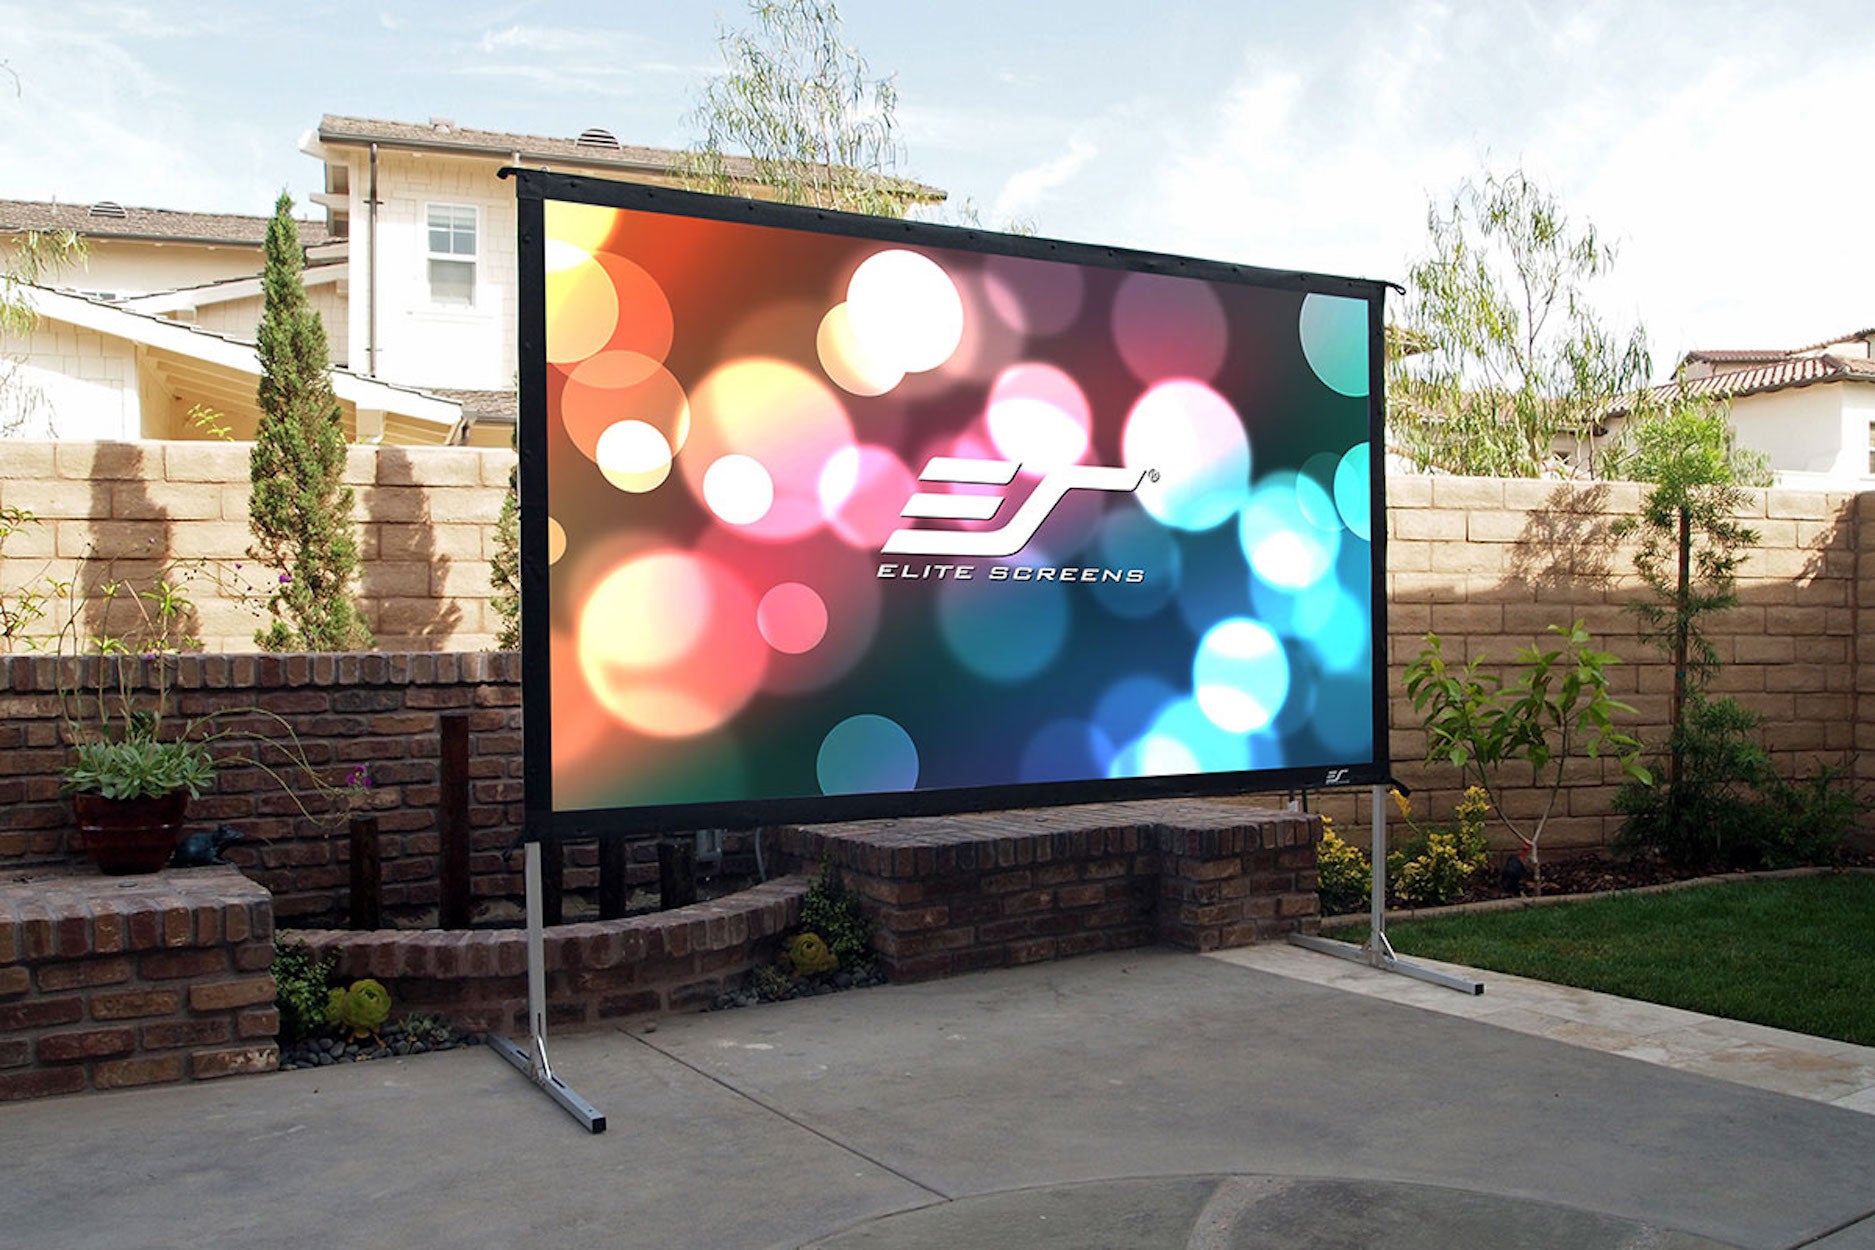 Yard master Elite screens écrans de projection extérieurs mobiles Leinwand für Außenbereich